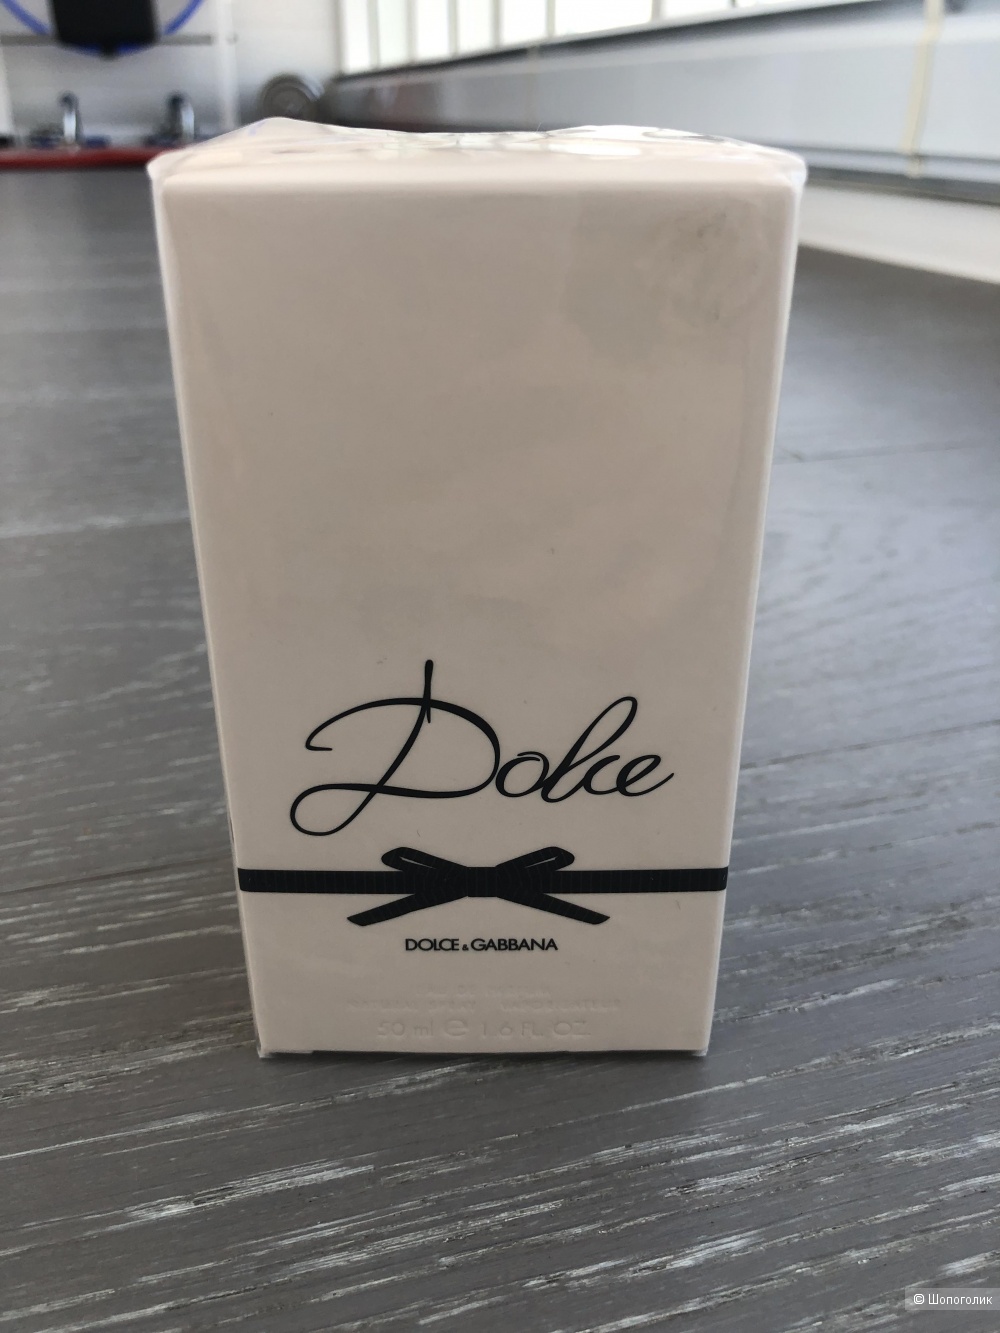 Парфюмерная вода Dolce&Gabbana Dolce 50 мл